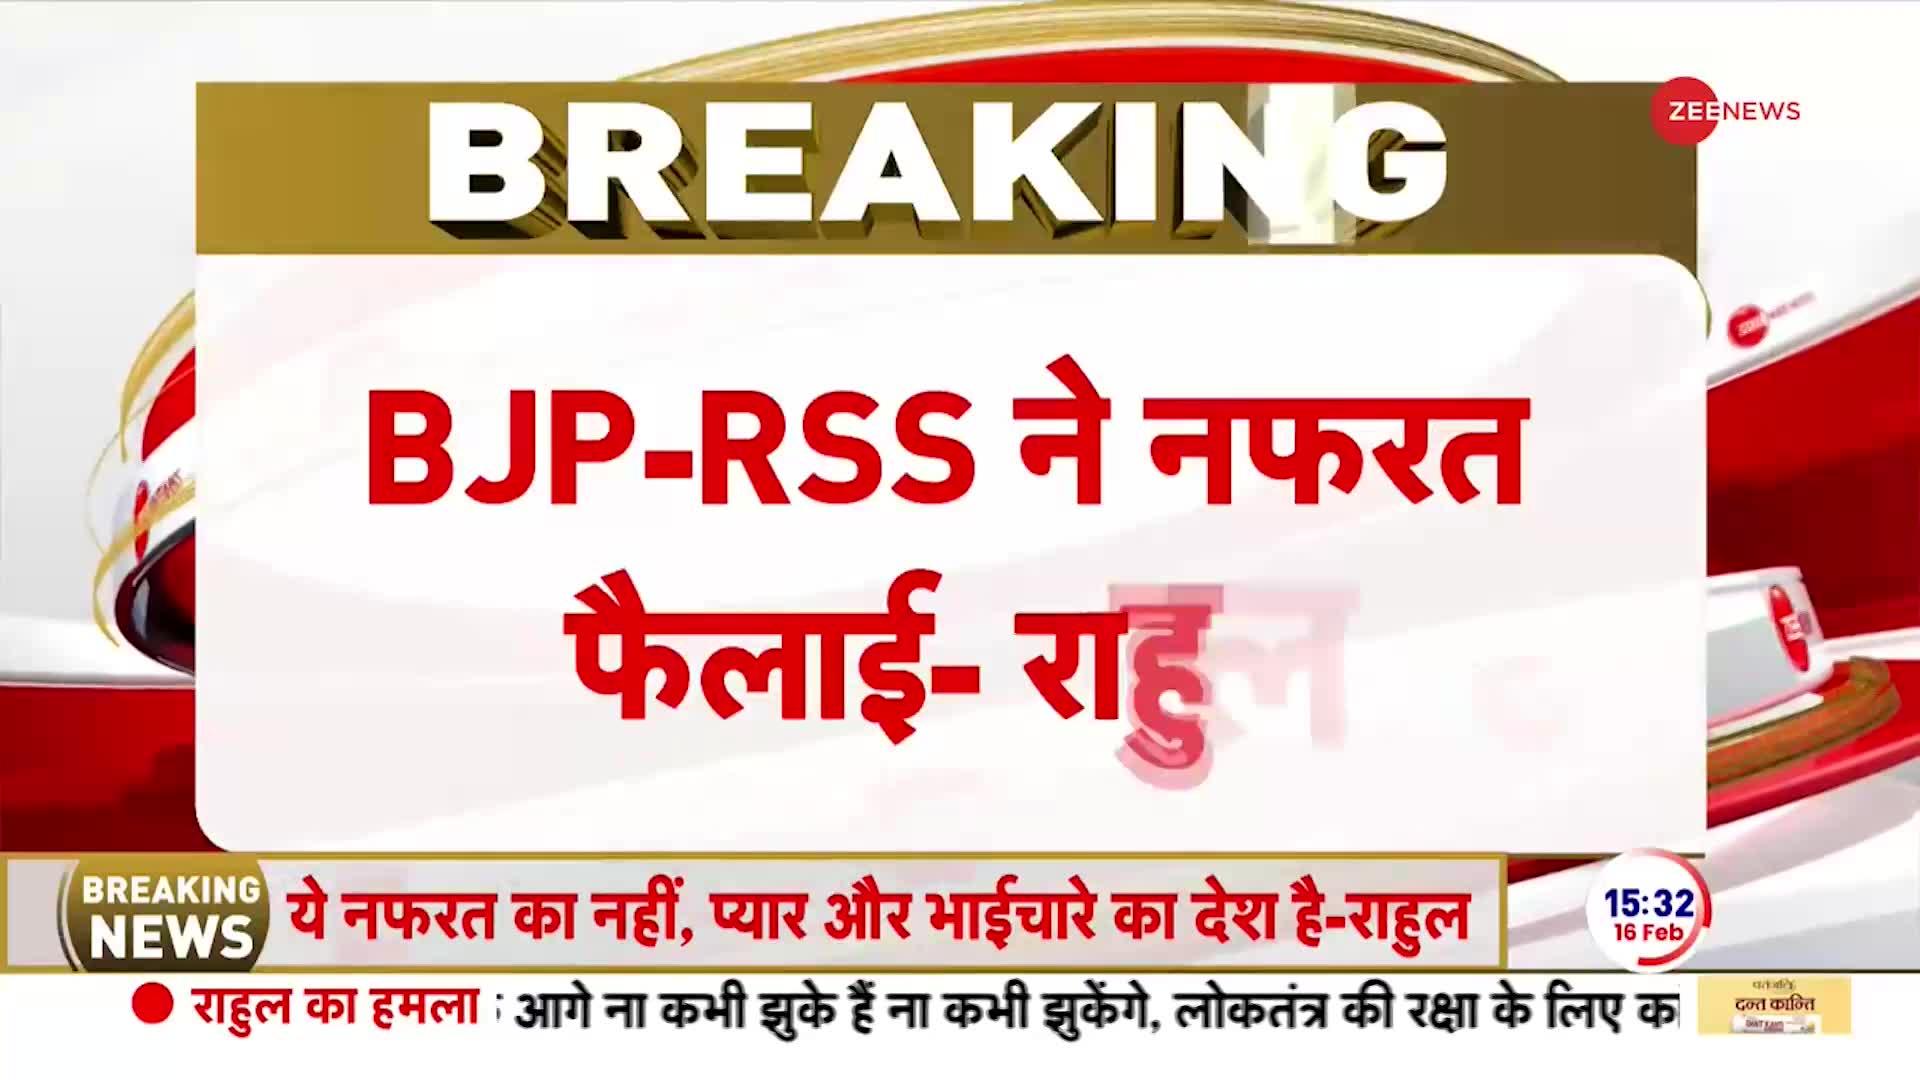 Breaking News: 'BJP-RSS ने हिंदुस्तान में नफरत और हिंसा फैलाई' Rahul Gandhi